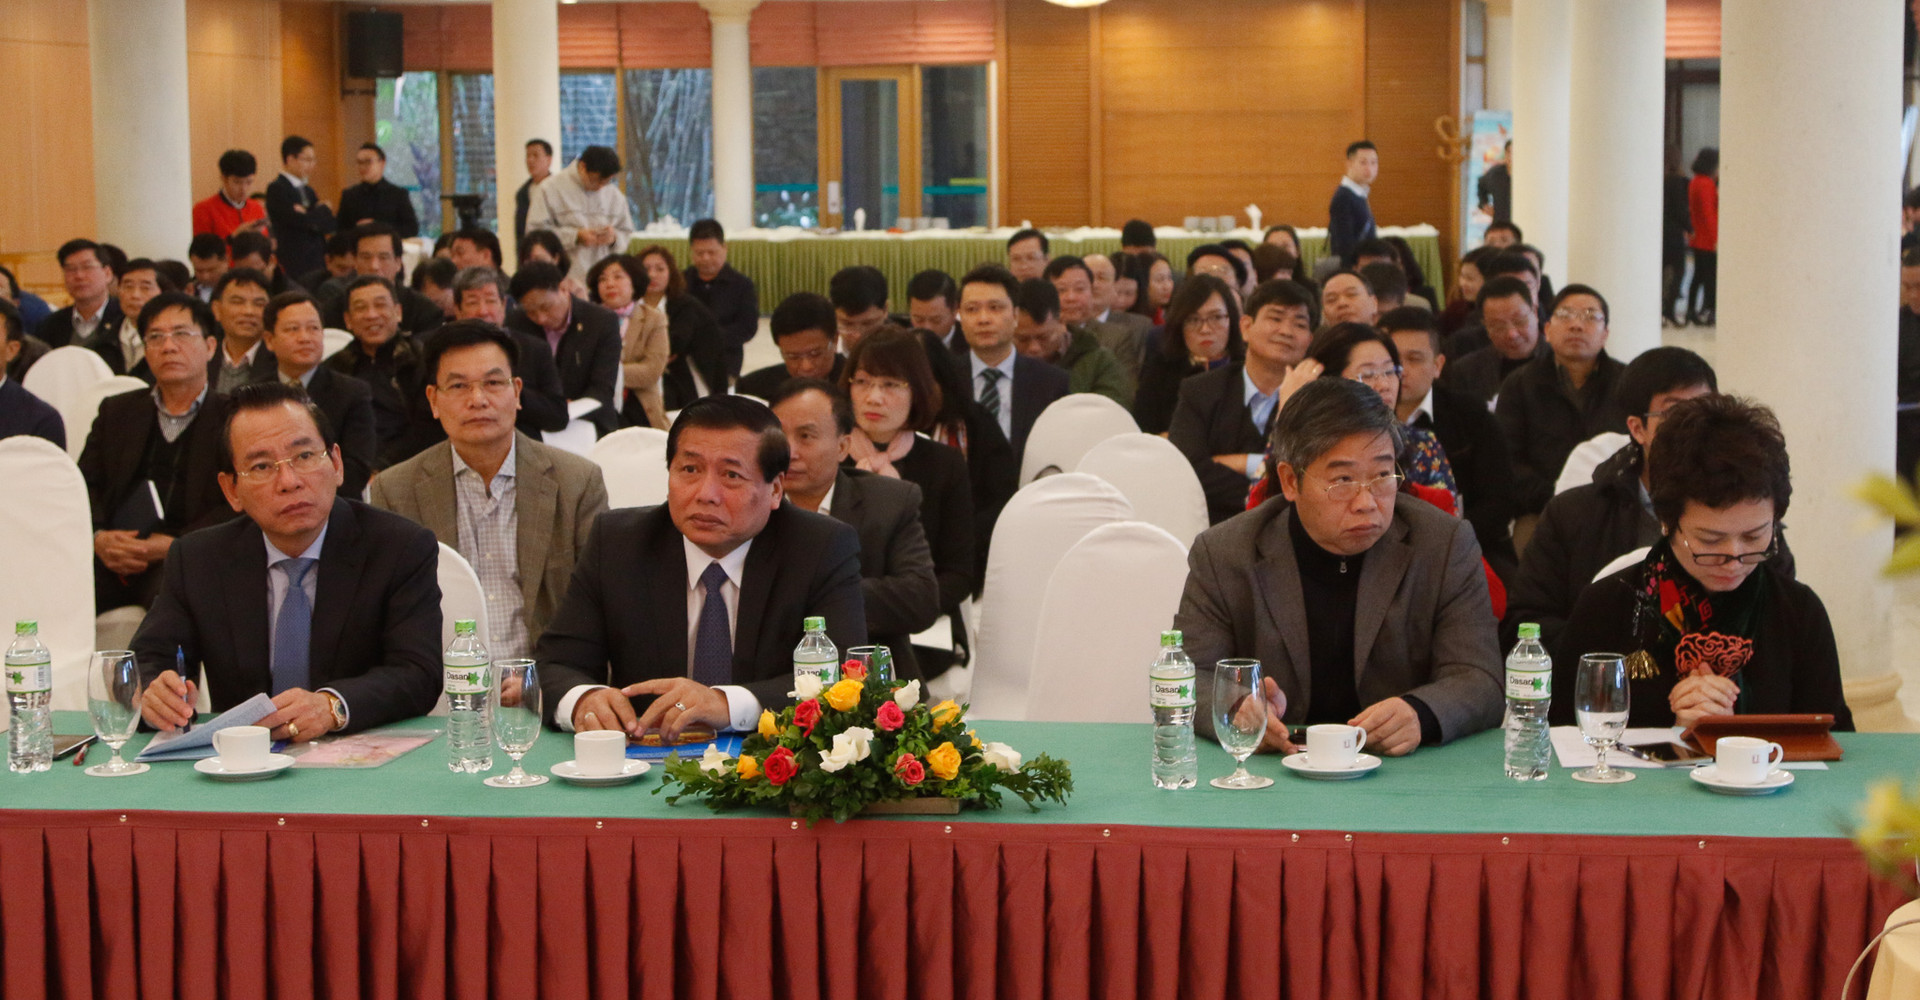 Đảng bộ Khối Doanh nghiệp Hà Nội: Hội nghị tổng kết công tác năm 2018